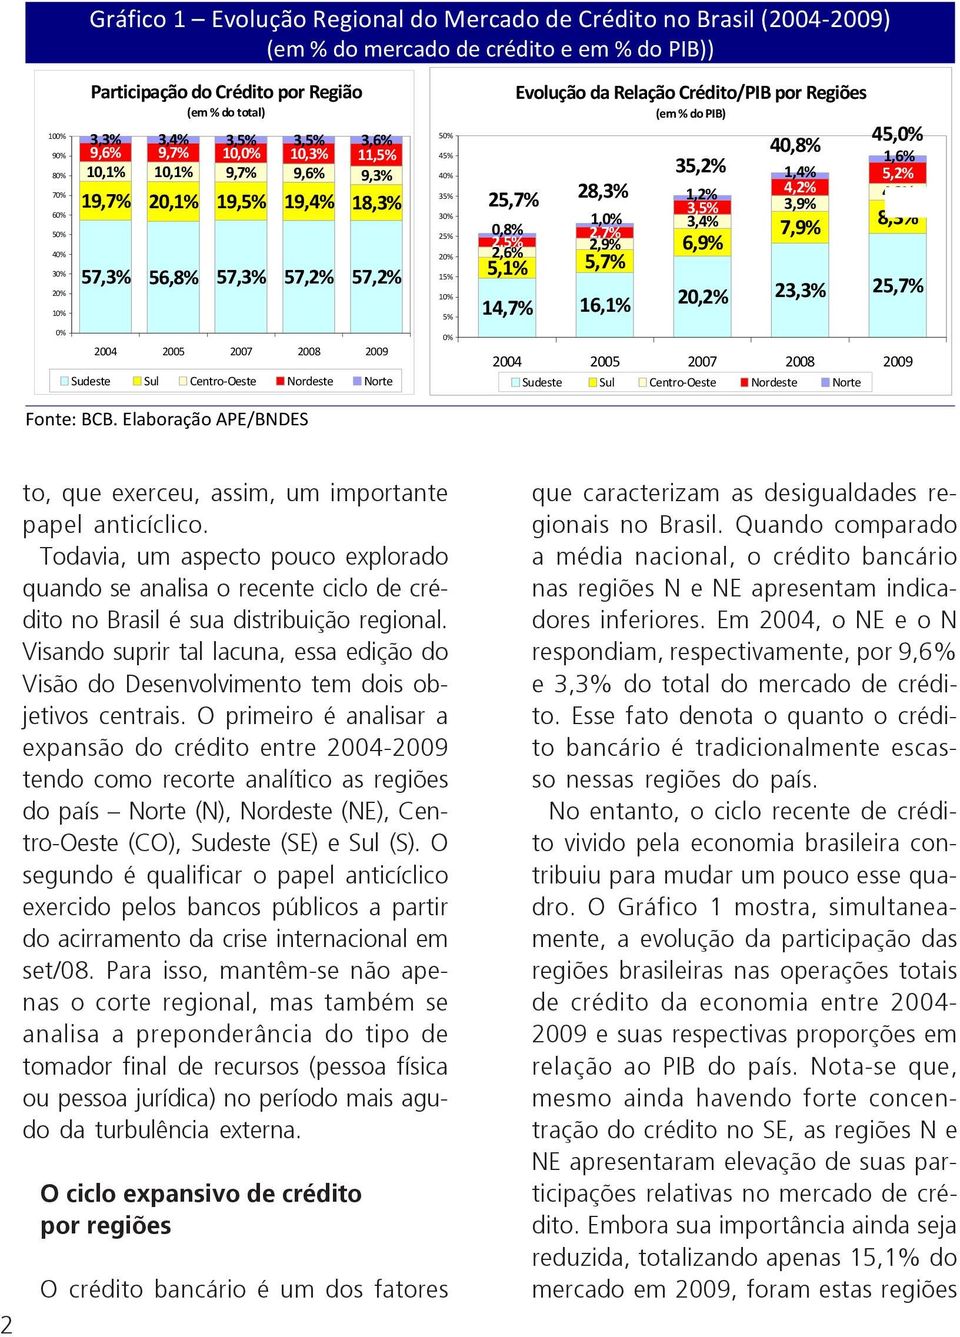 Nordeste Norte 50% 45% 40% 35% 30% 25% 20% 15% 10% 5% 0% 25,7% 0,8% 2,5% 2,6% Evolução da Relação Crédito/PIB por Regiões (em % do PIB) 28,3% 1,0% 2,7% 2,9% 5,1% 5,7% 35,2% 1,2% 3,5% 3,4% 6,9% 40,8%